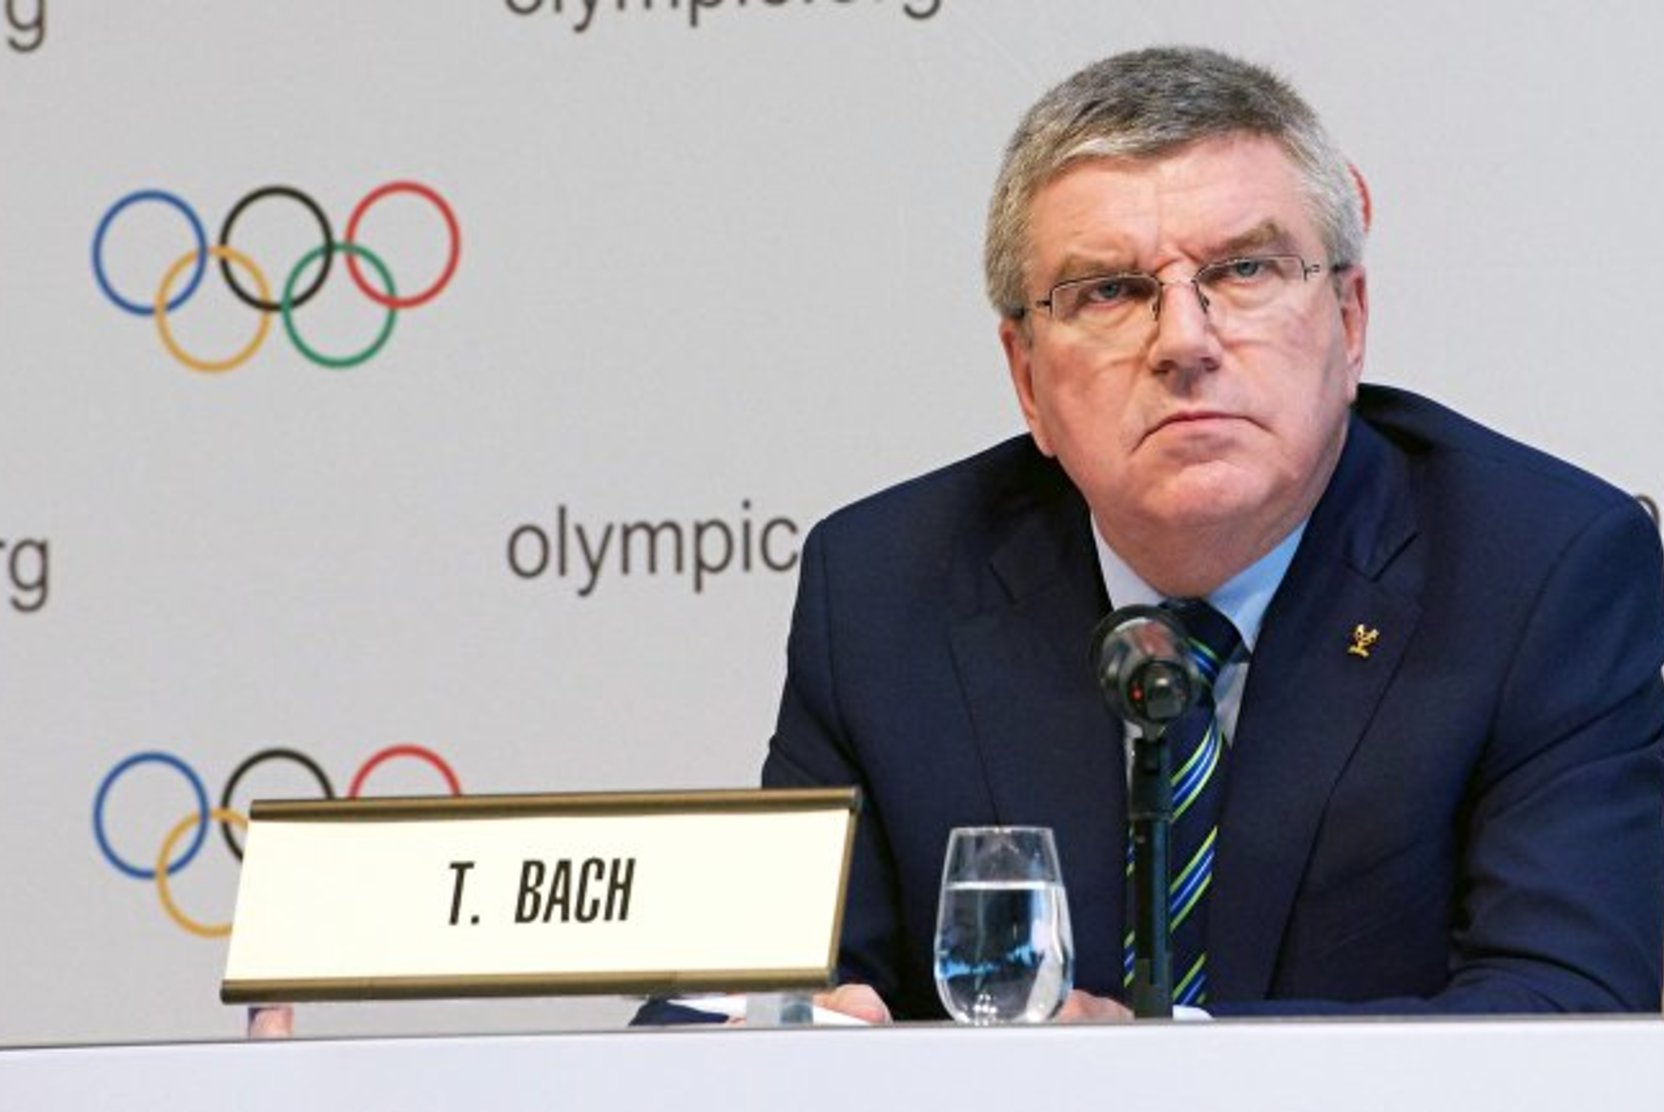 Бах: если бы мы отменили Олимпиаду, то потеряли целое поколение атлетов